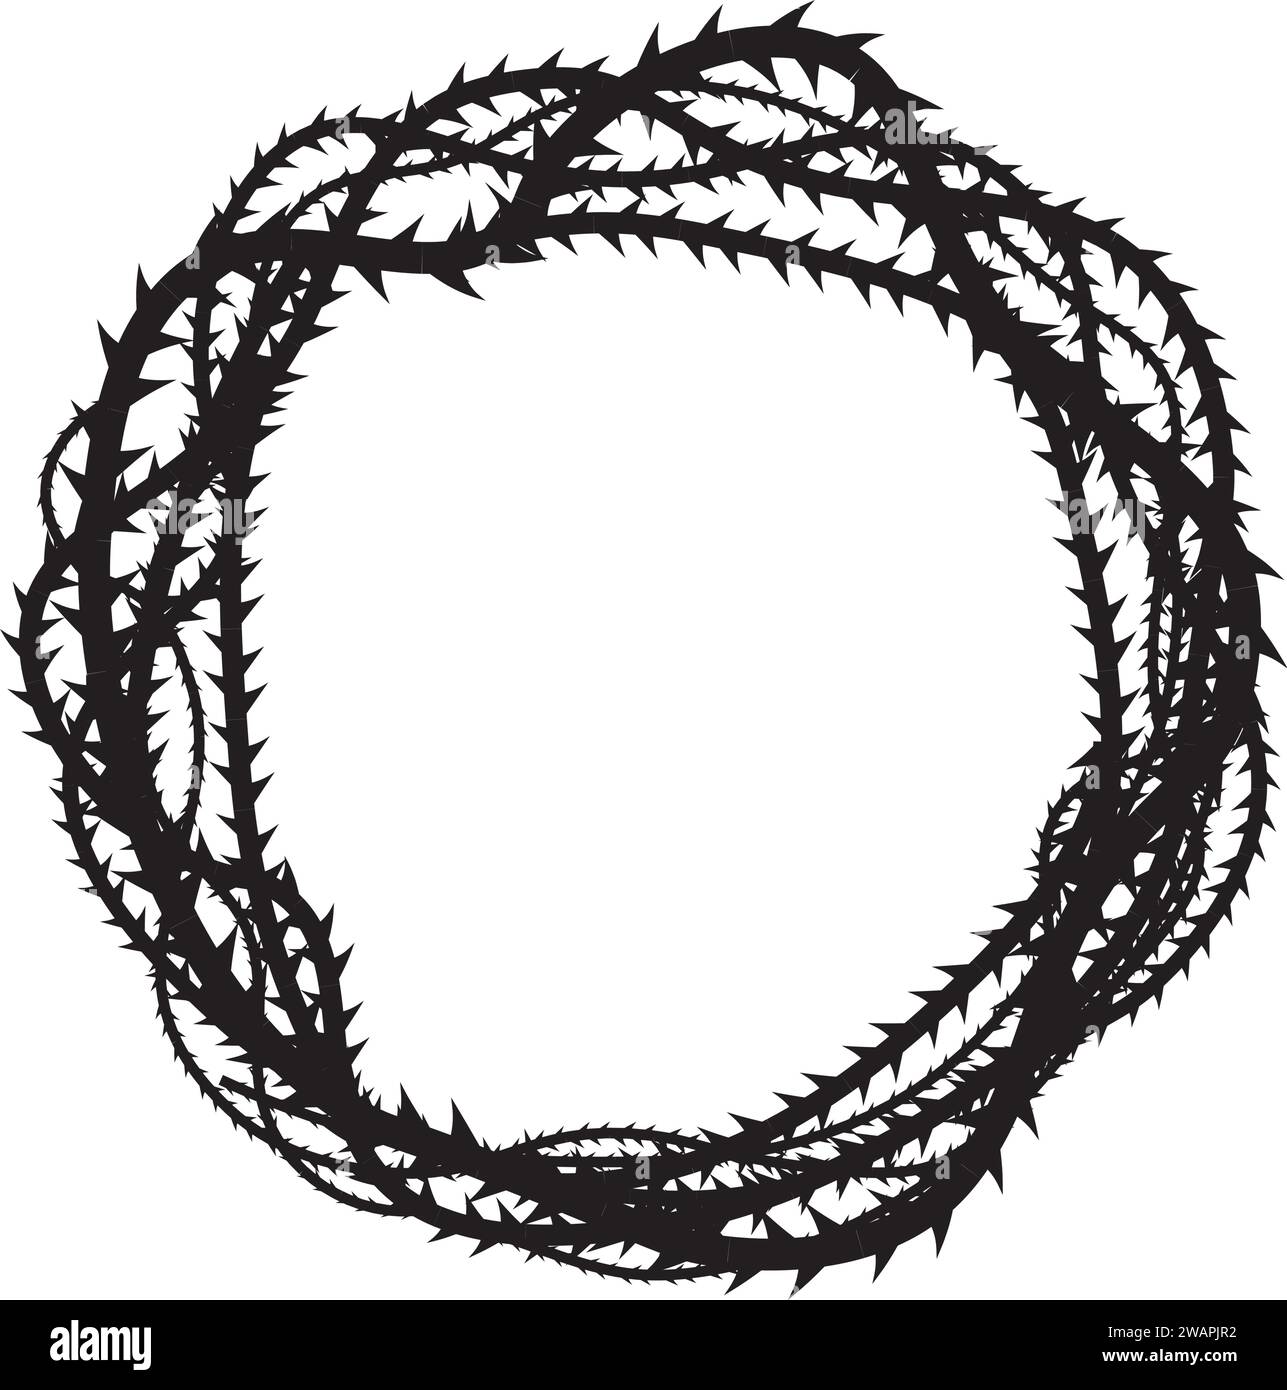 Schwarze Silhouette eines ineinander verflochtenen Dornkranzes, der die Krone Christi symbolisiert, aggressiv und bedrohlich Stock Vektor